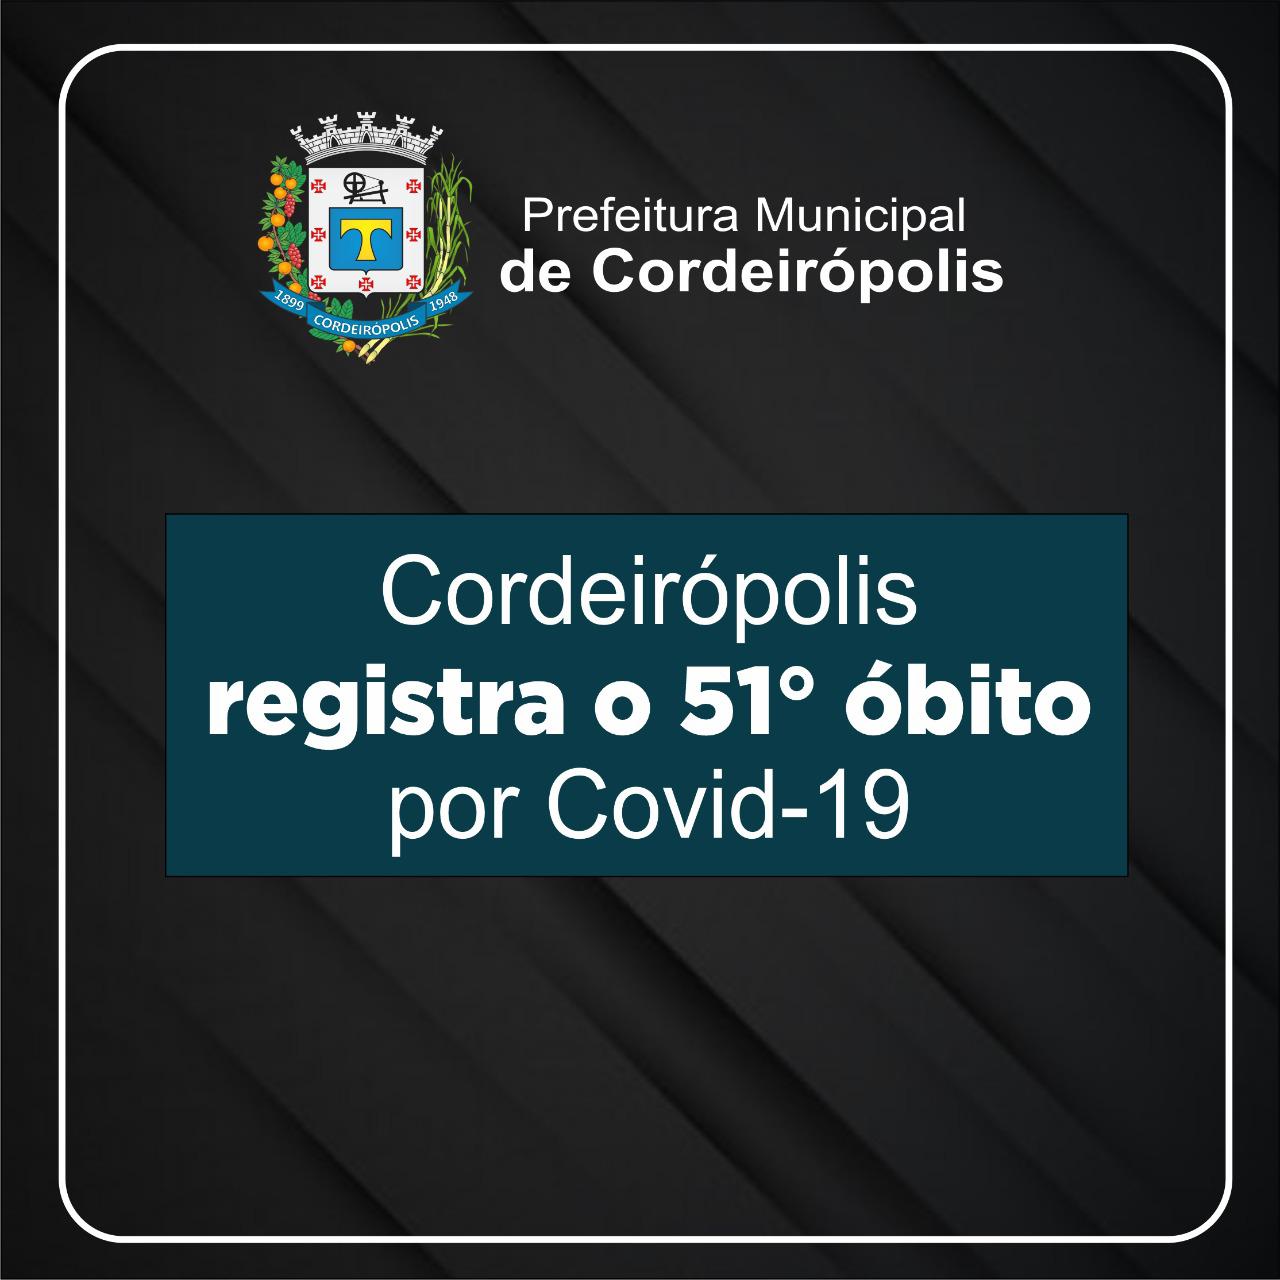 Cordeirópolis registra o 51° óbito decorrente de Covid